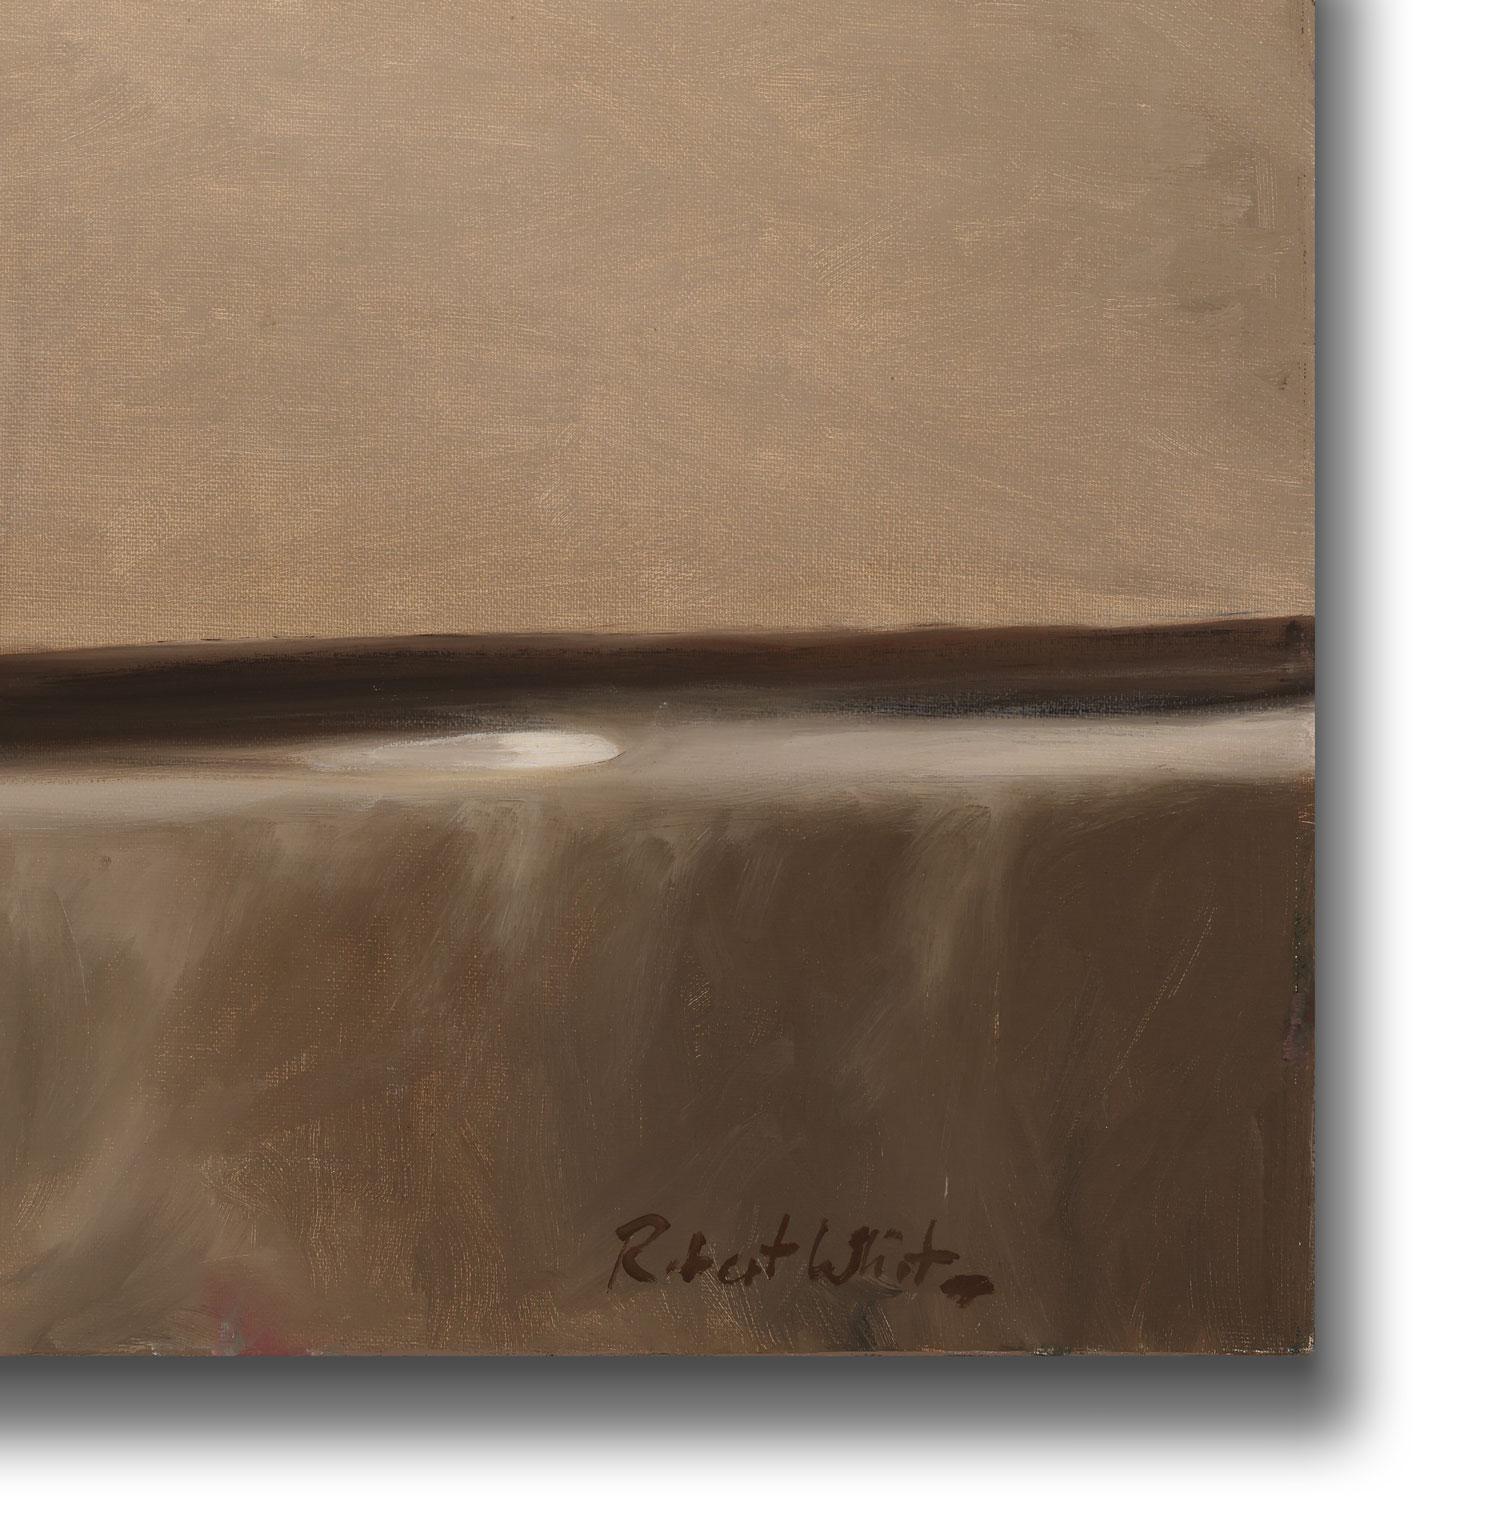 Untitled [Glasses], une huile originale sur toile de Robert K. White, est une pièce pour le vrai collectionneur. L'attention minutieuse portée par White aux détails et l'utilisation vive des bruns ressortent du tableau, captant immédiatement